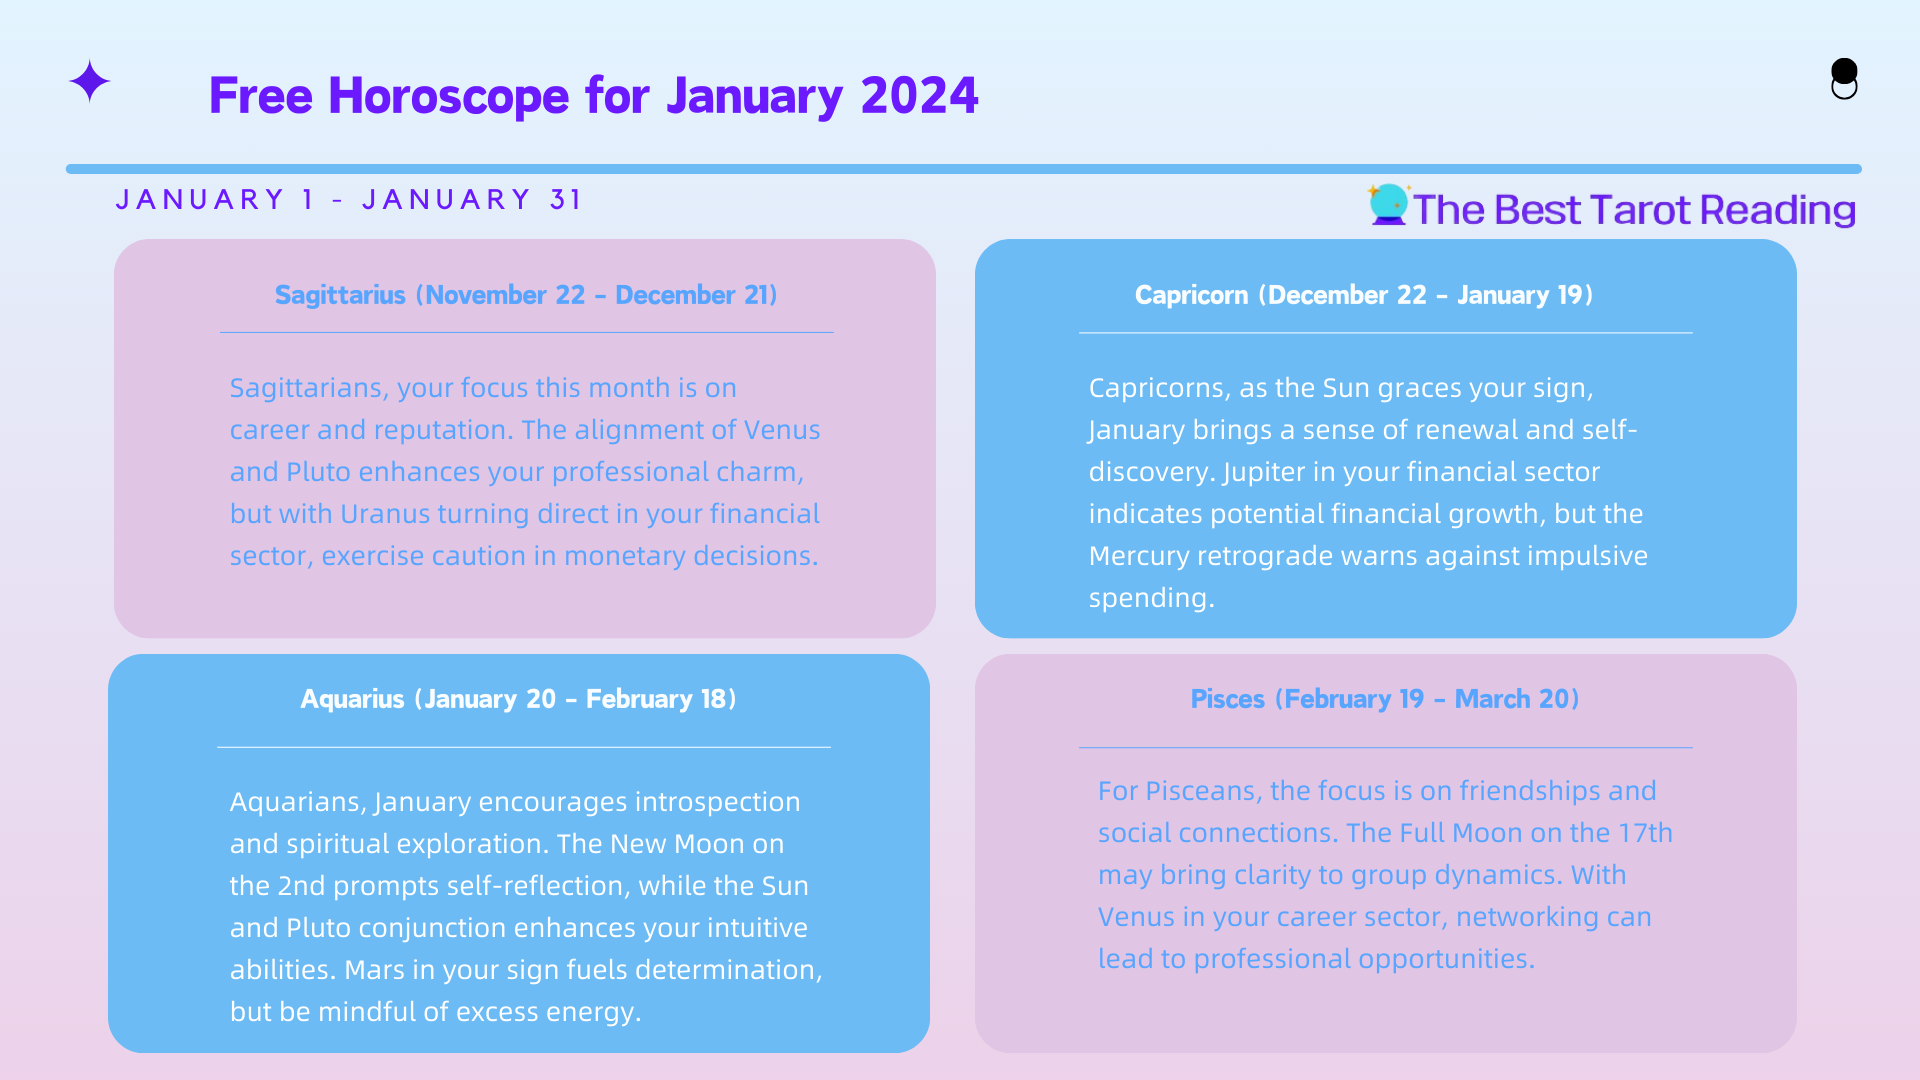 Free horoscope for January 2024